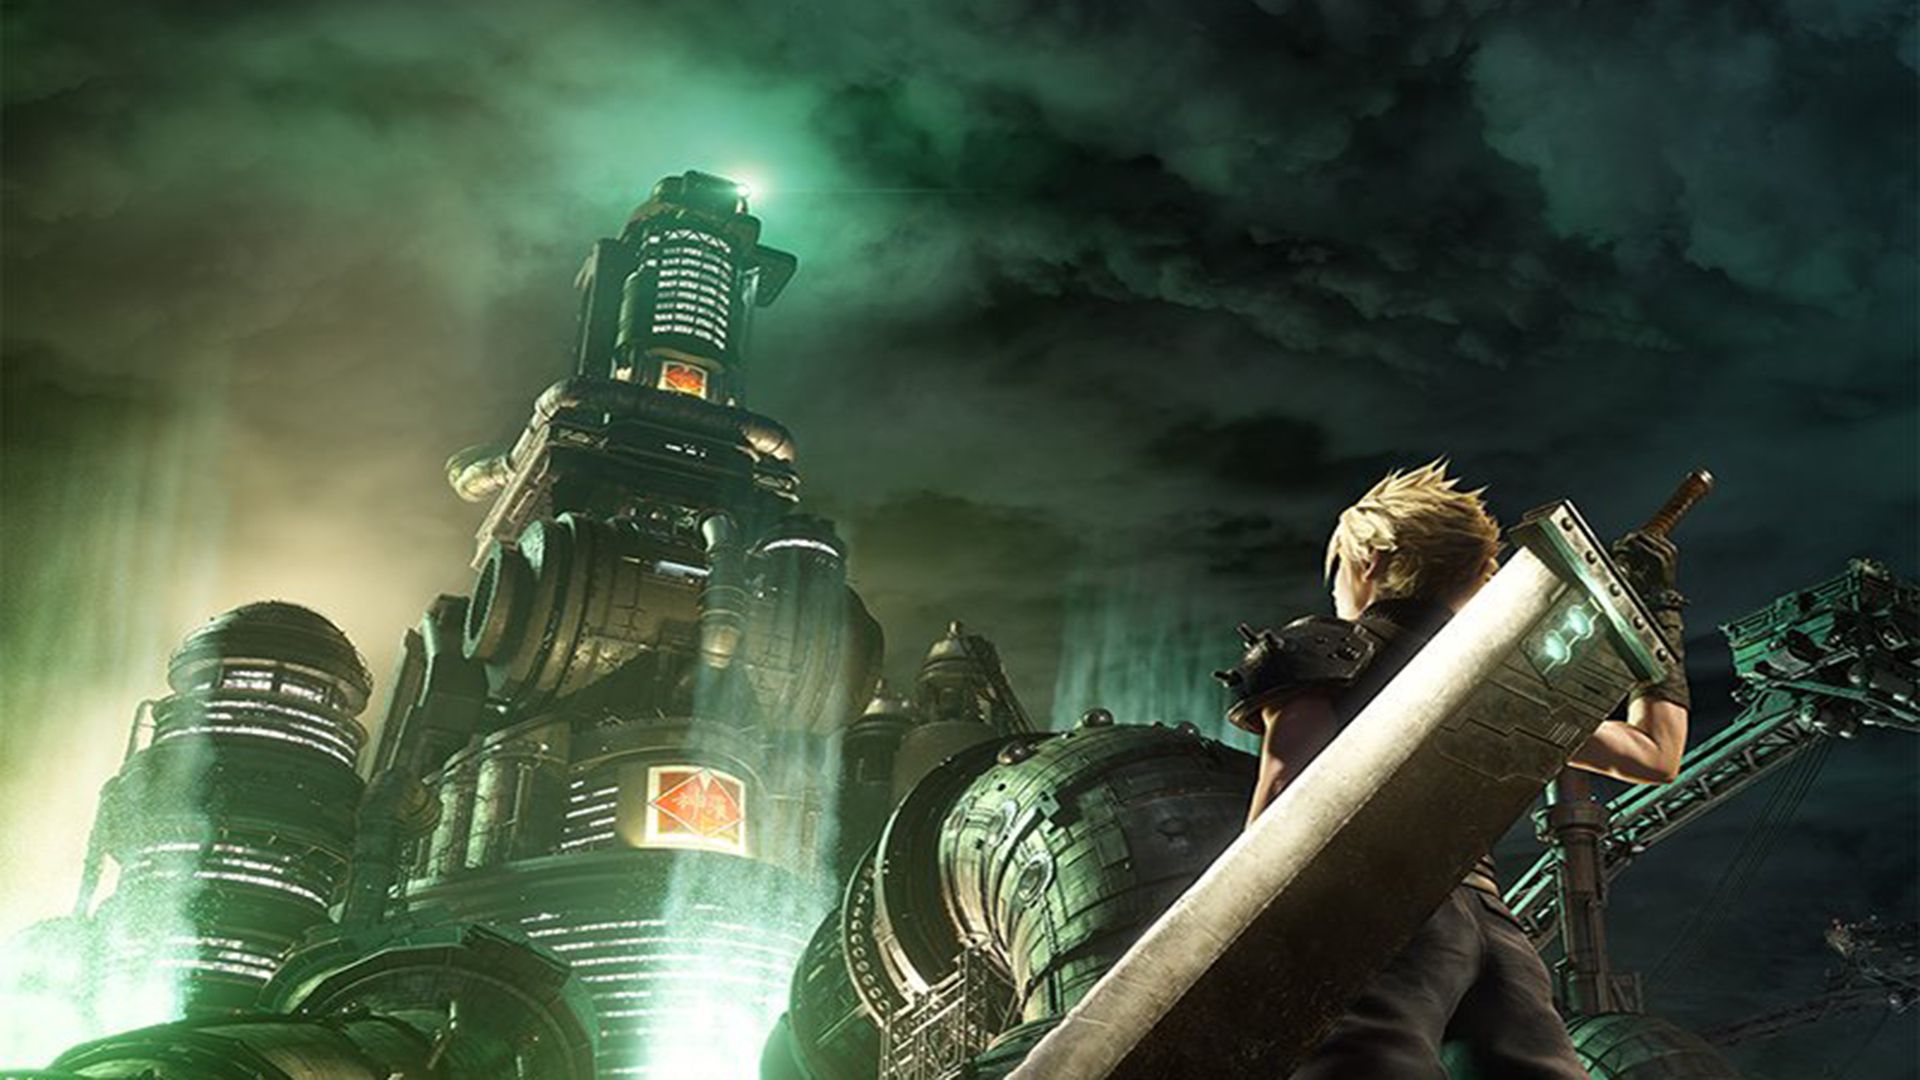 Final Fantasy VII Remake, 5 milyondan fazla kopya sattı